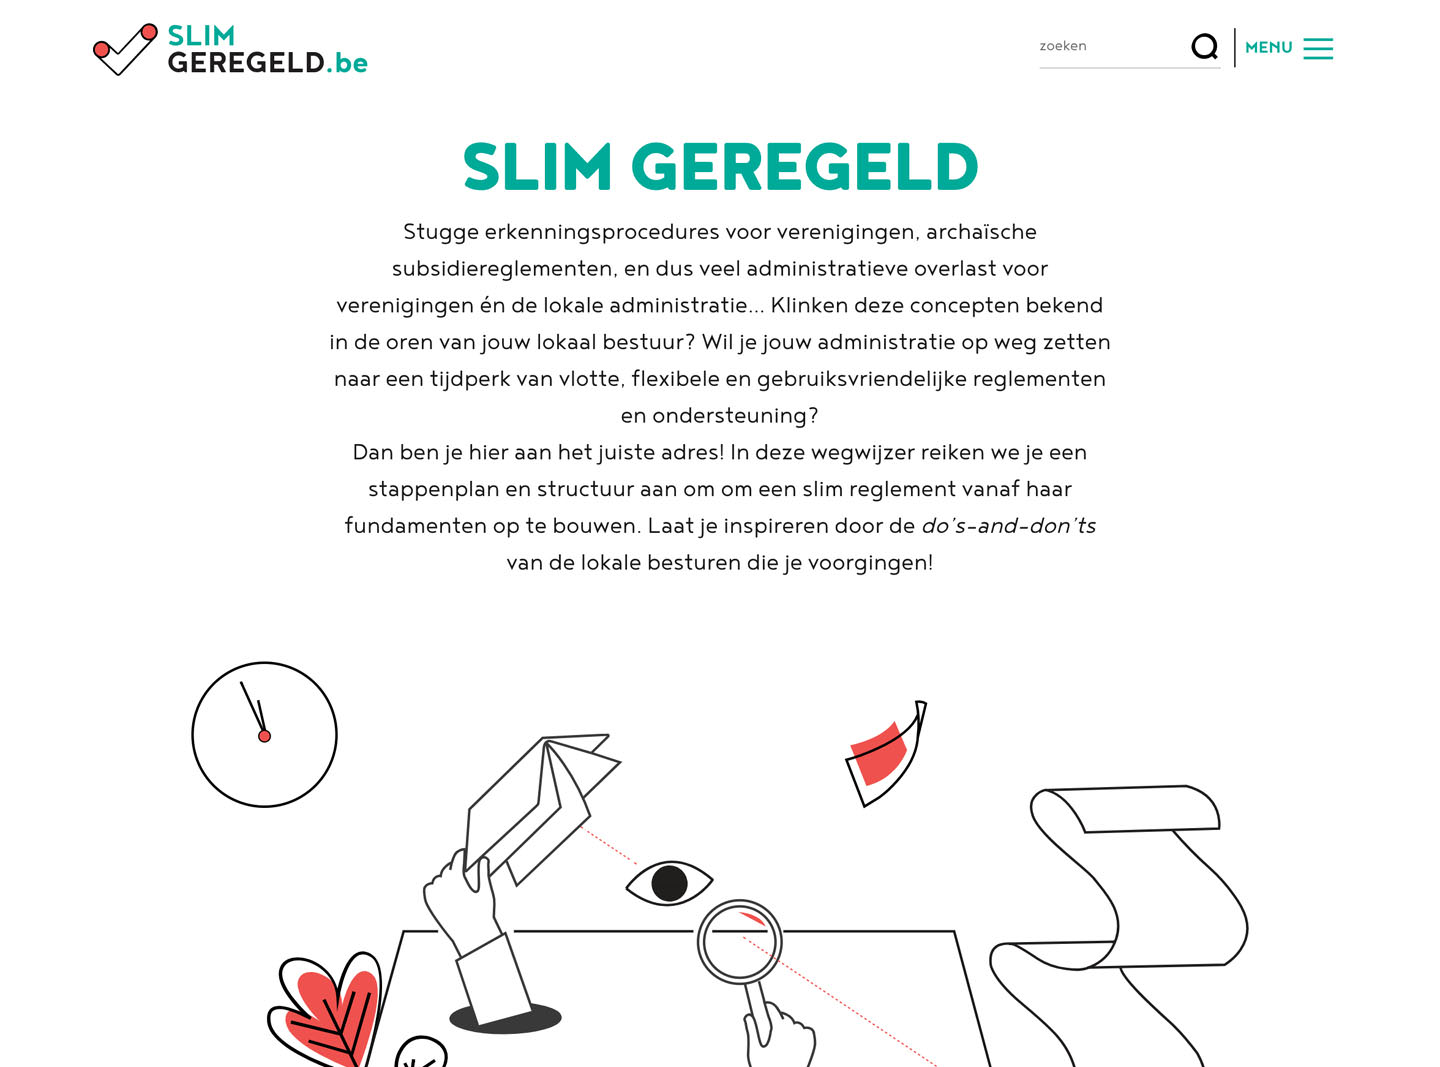 Homepage of Slim Geregeld.